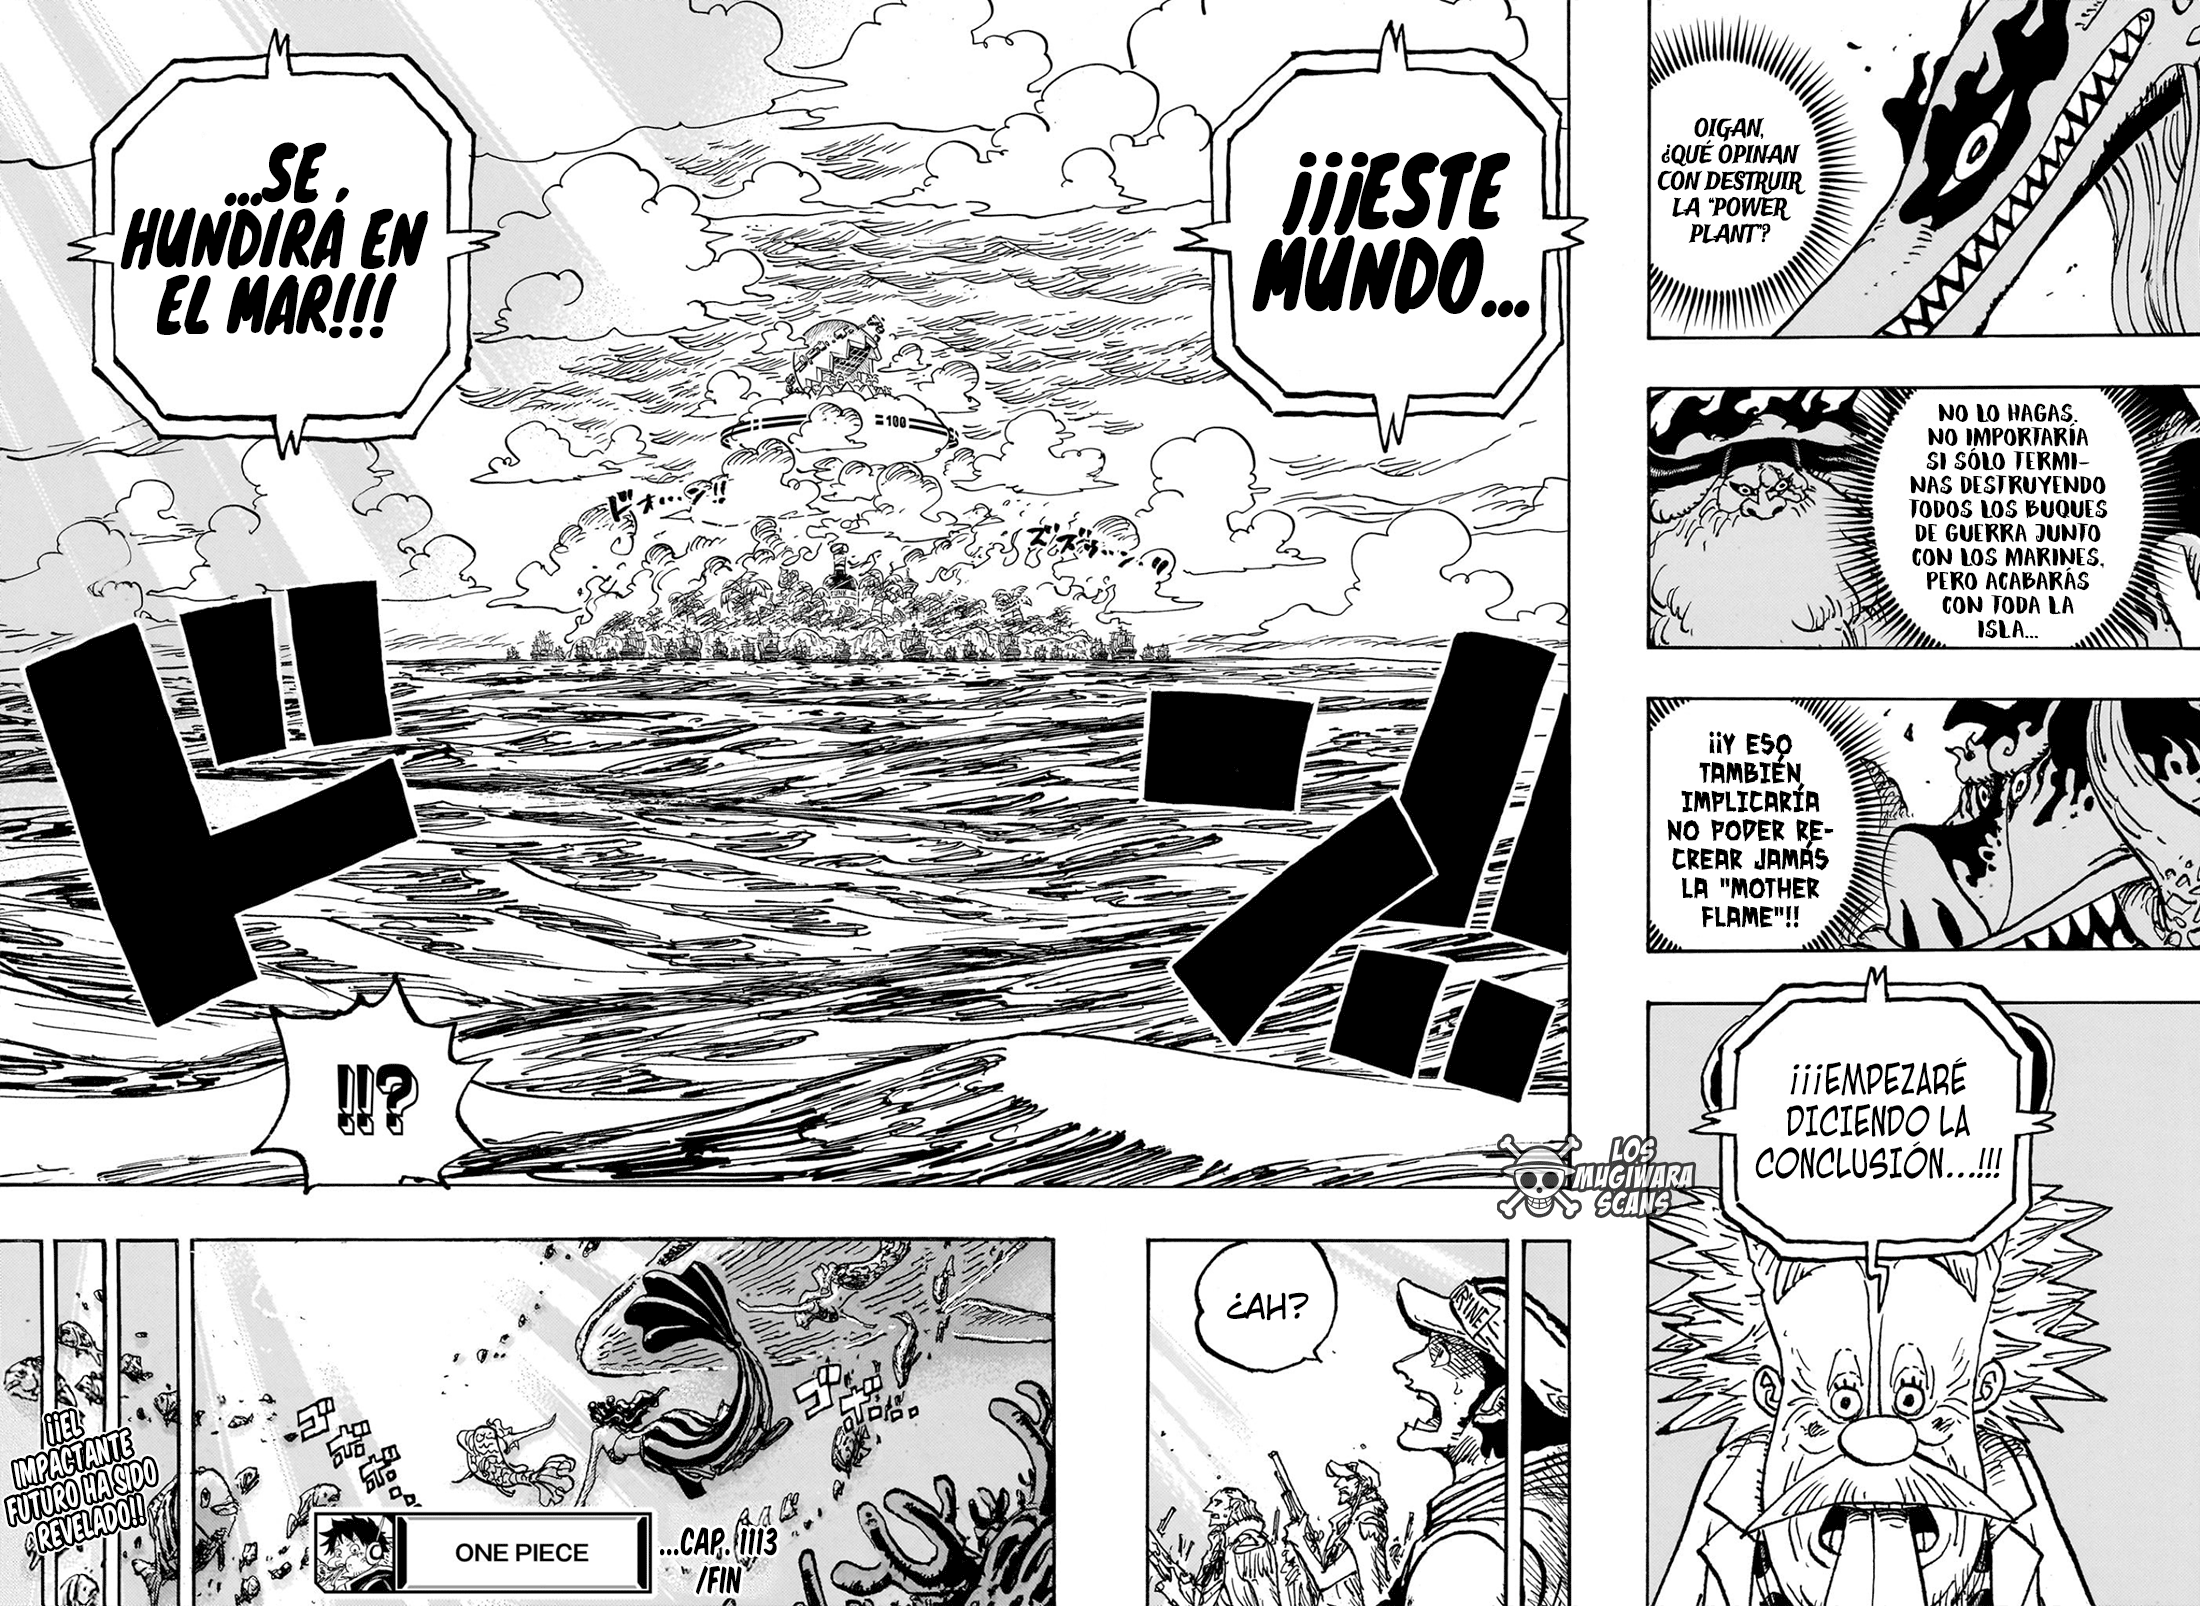 piece - One Piece Manga 1113 [Español] 14